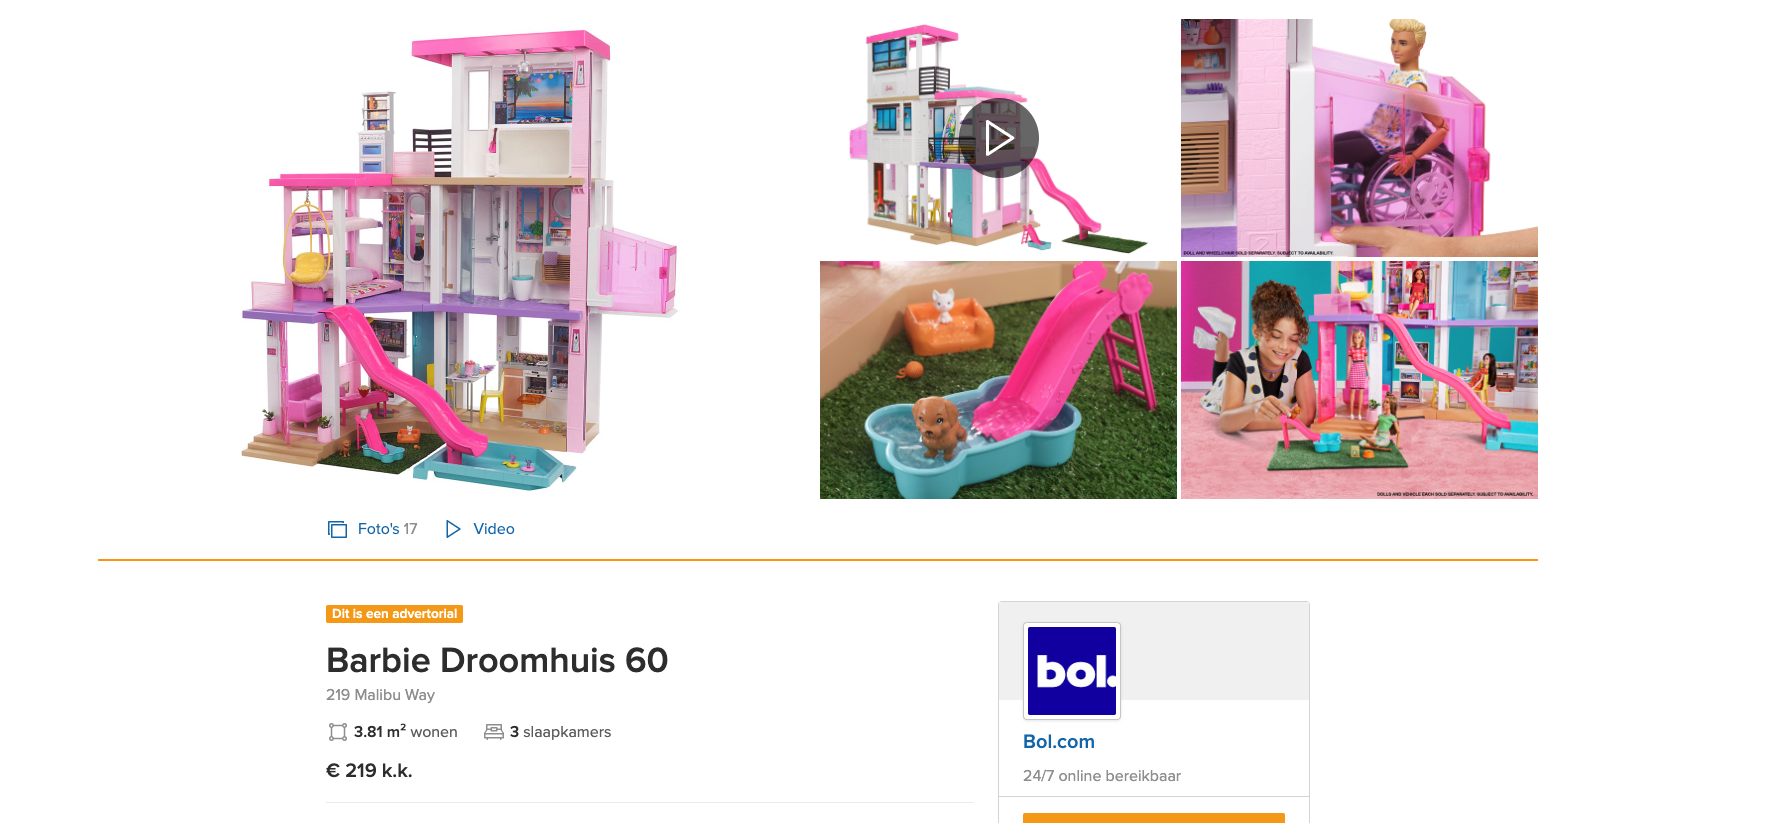 Barbie verkoopt haar droomhuis op funda en bol.com 